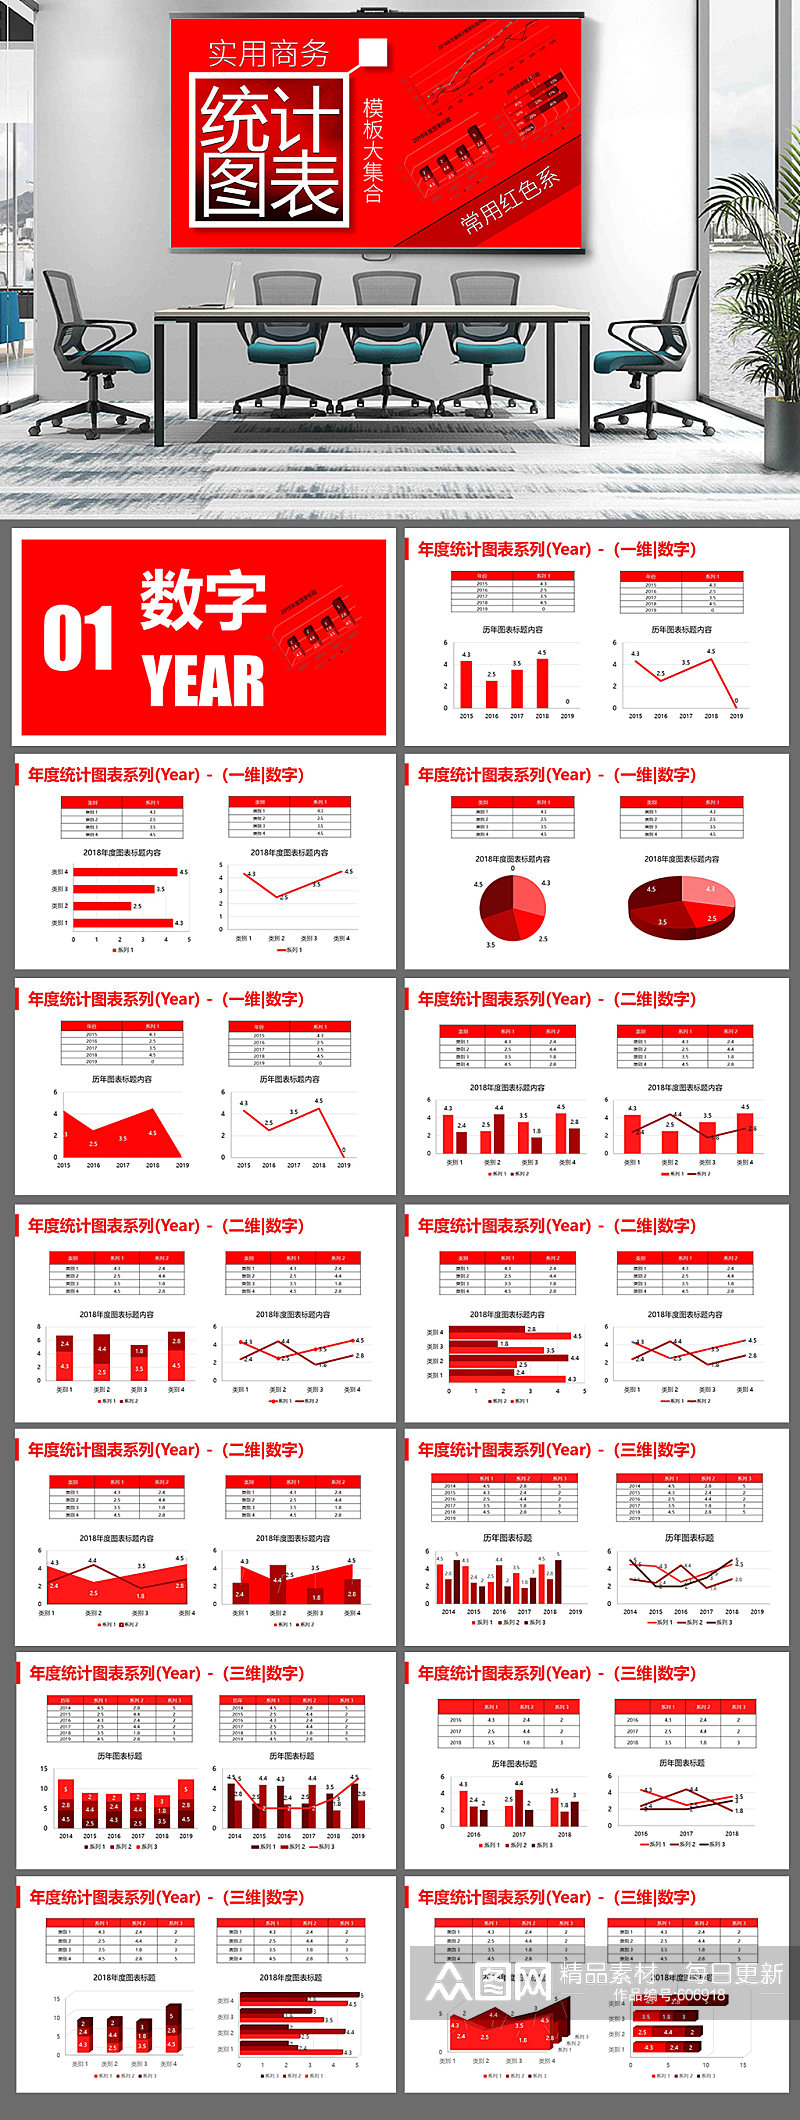 实用数据统计图表样板大集合1-红色系素材